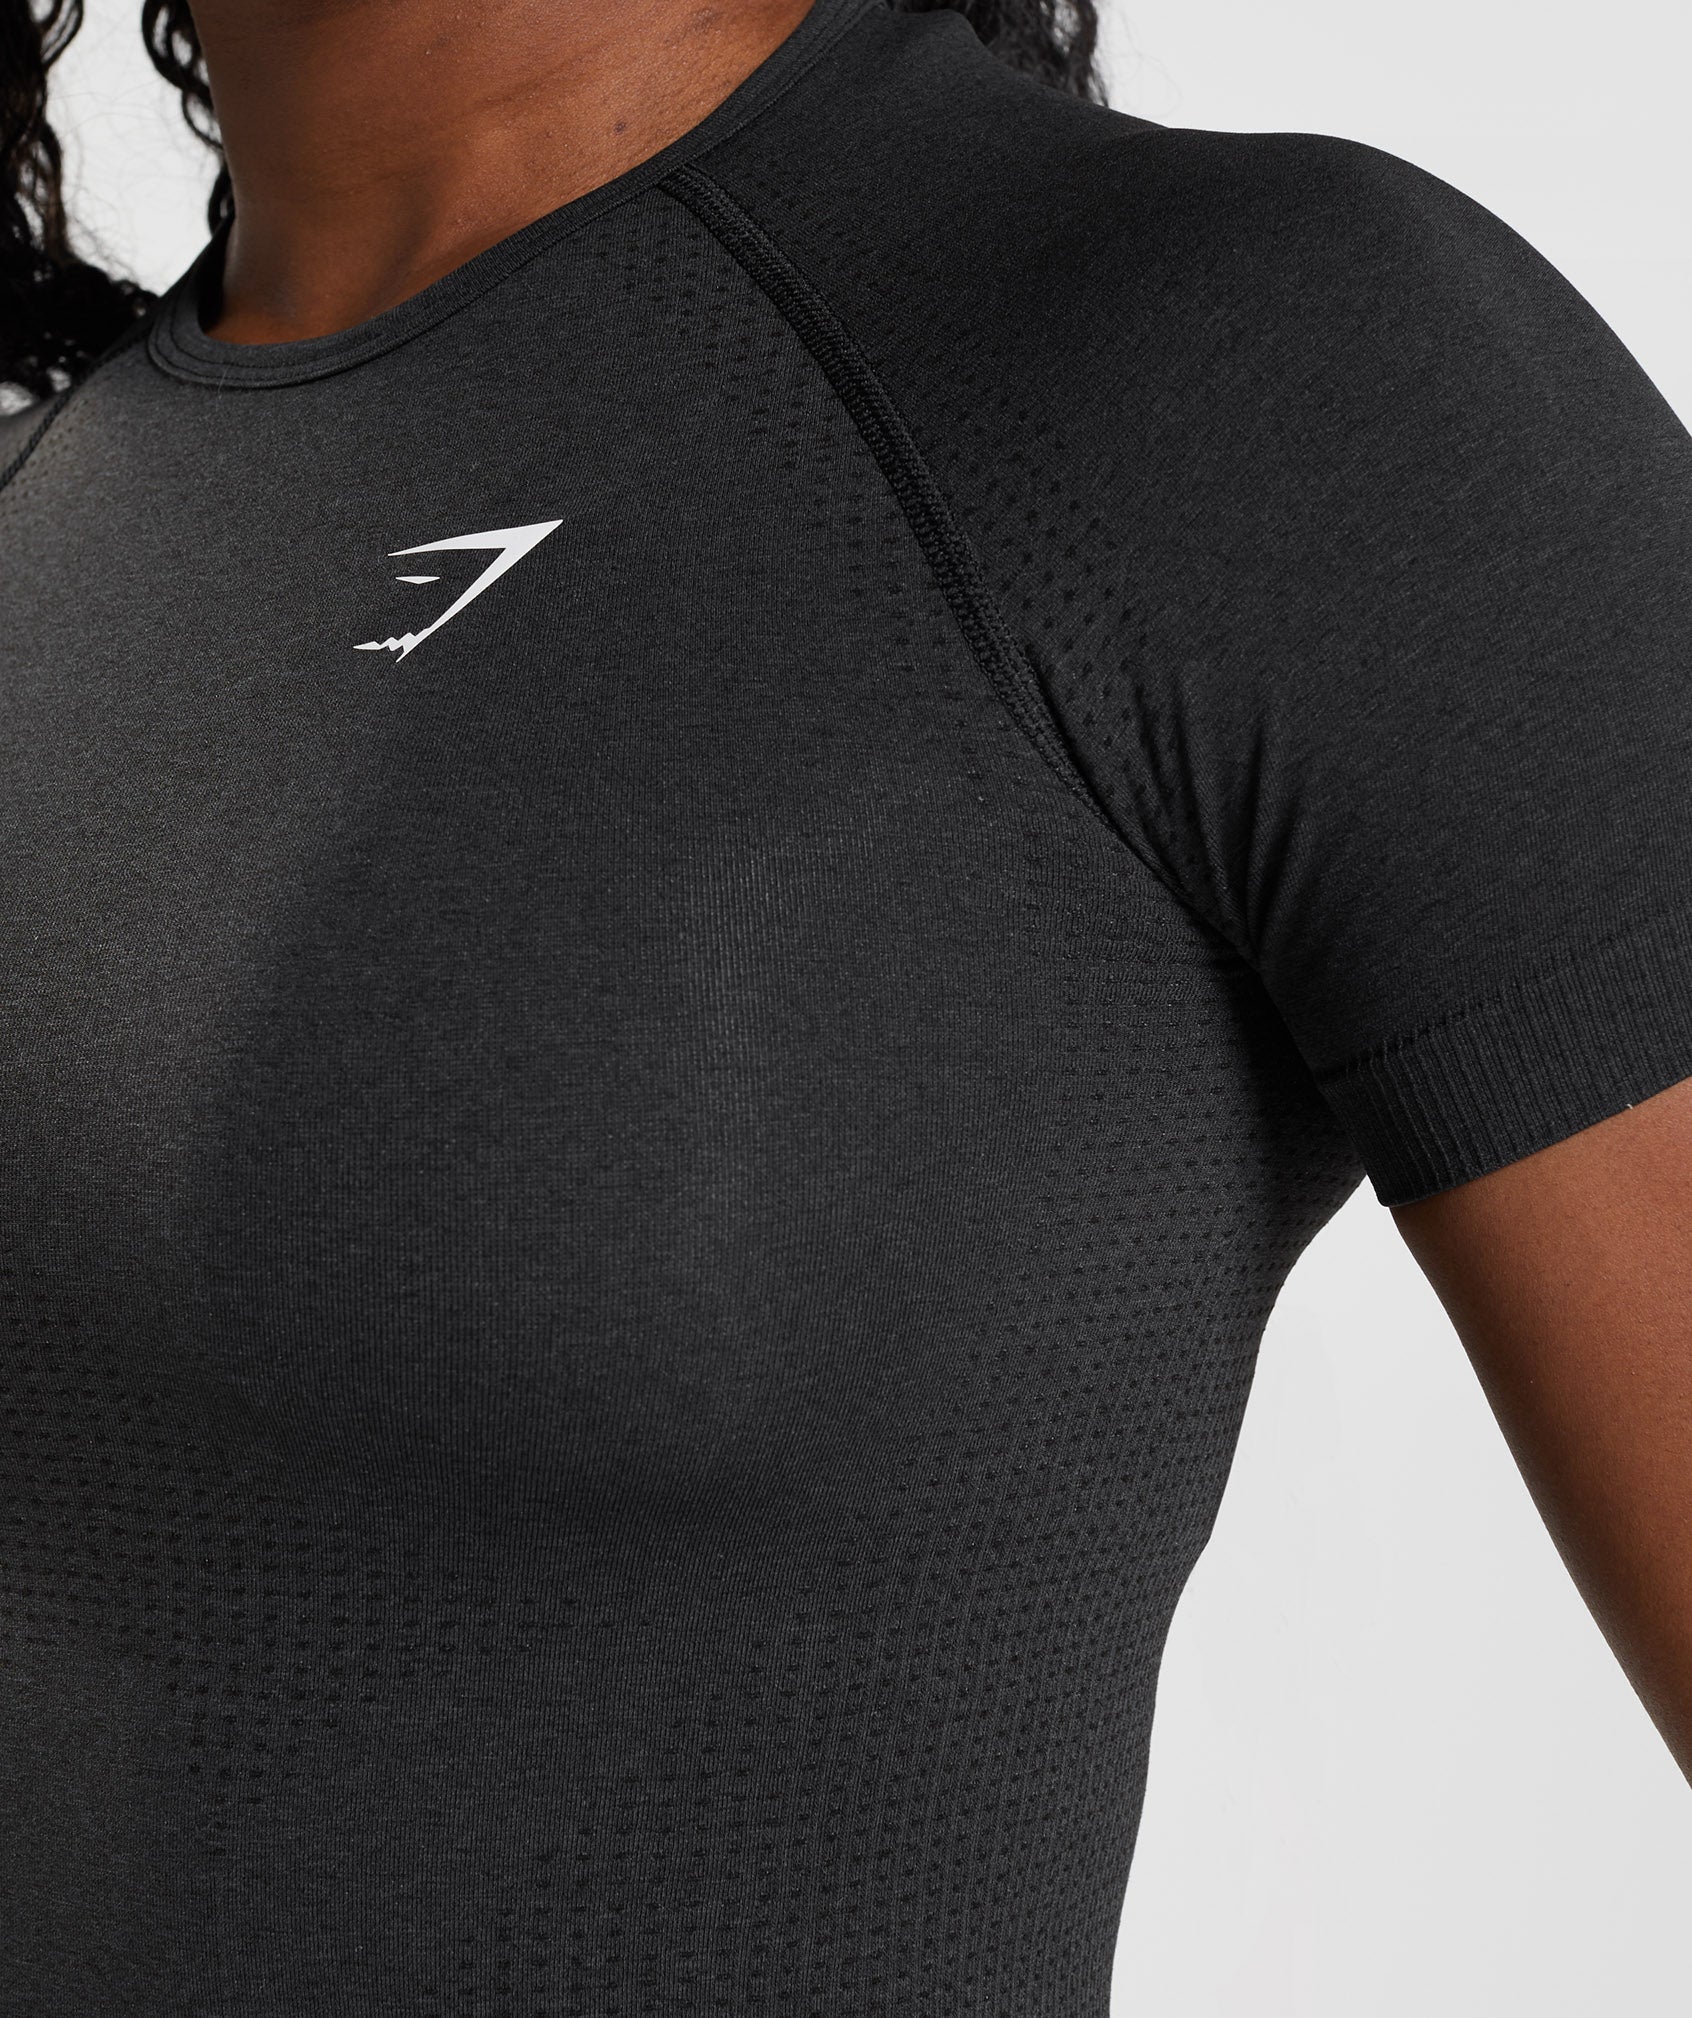 Gymshark Vital Seamless 2.0 Women's Shirt, Mottled black : :  Fashion